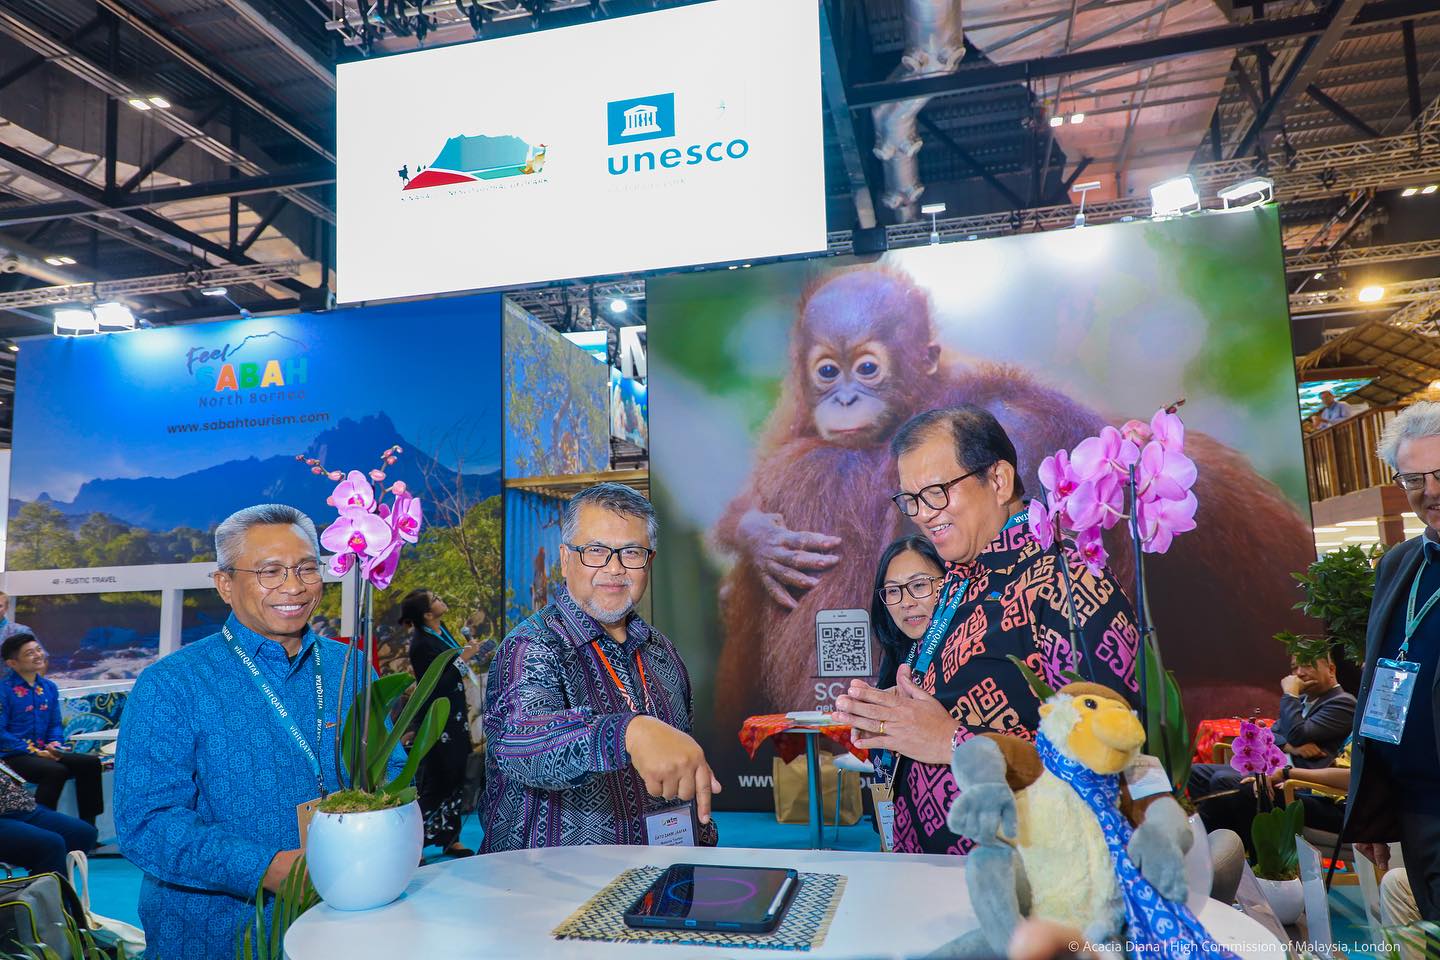 Sabah's UNESCO Triple Crown sparks global interest